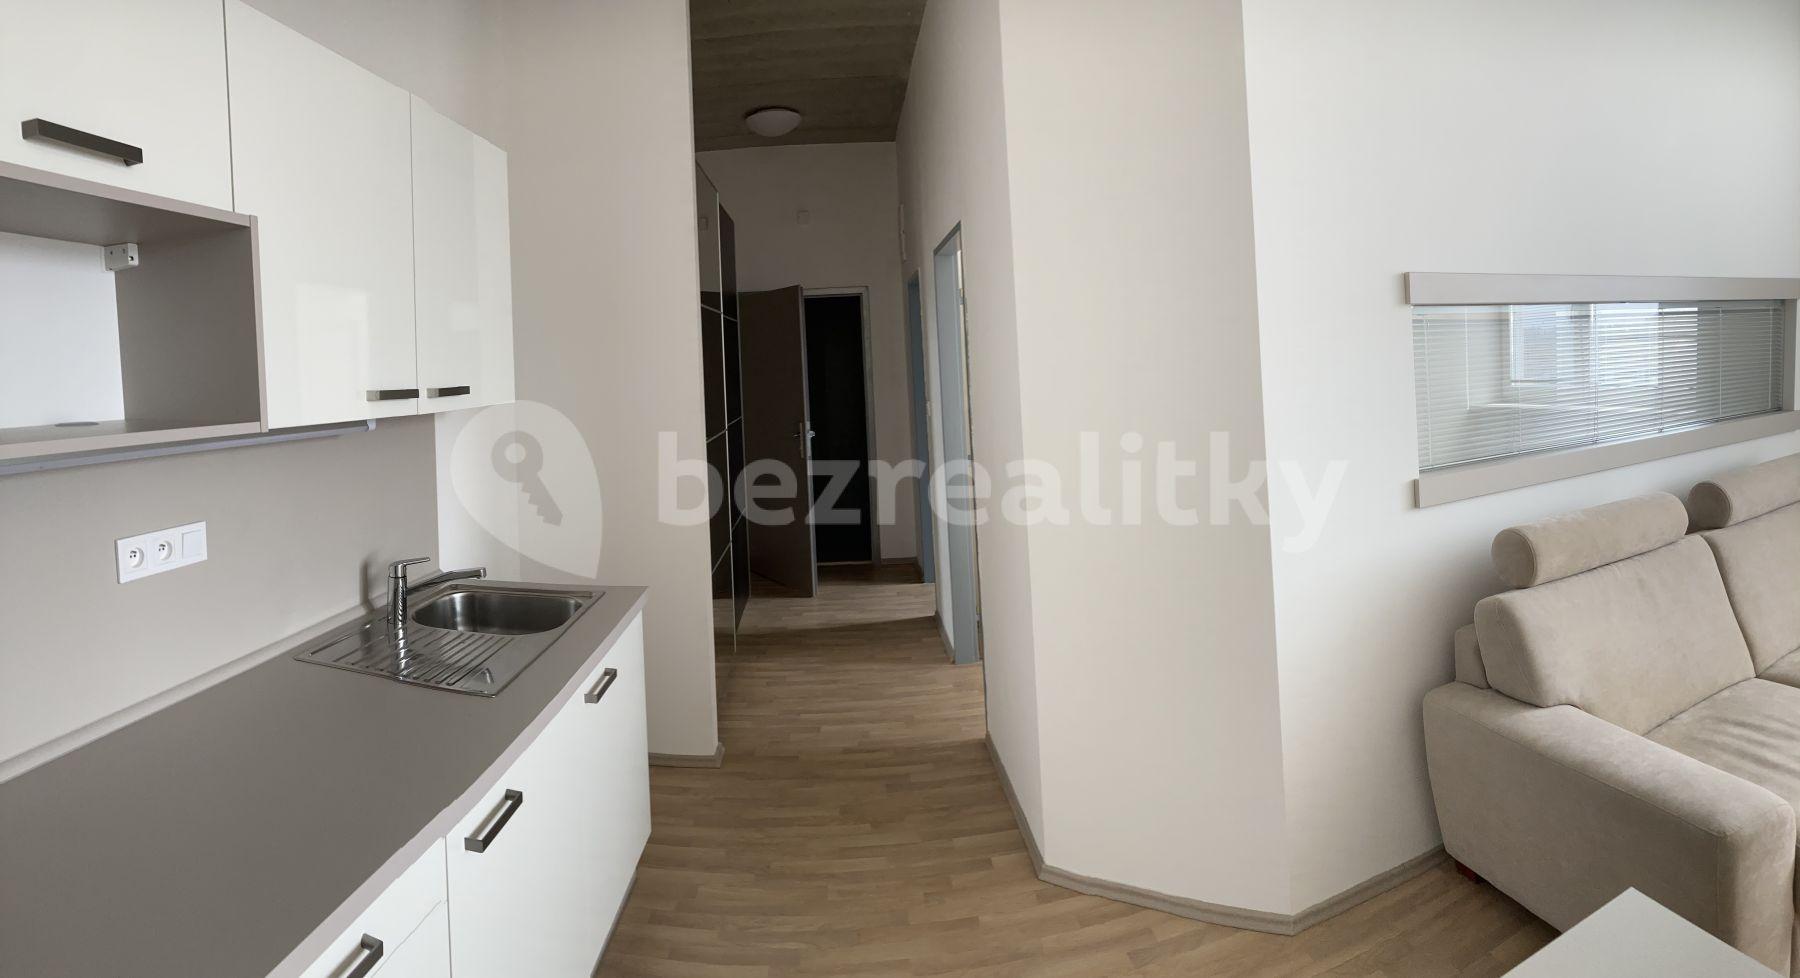 1 bedroom with open-plan kitchen flat to rent, 45 m², U Uhříněveské obory, Prague, Prague